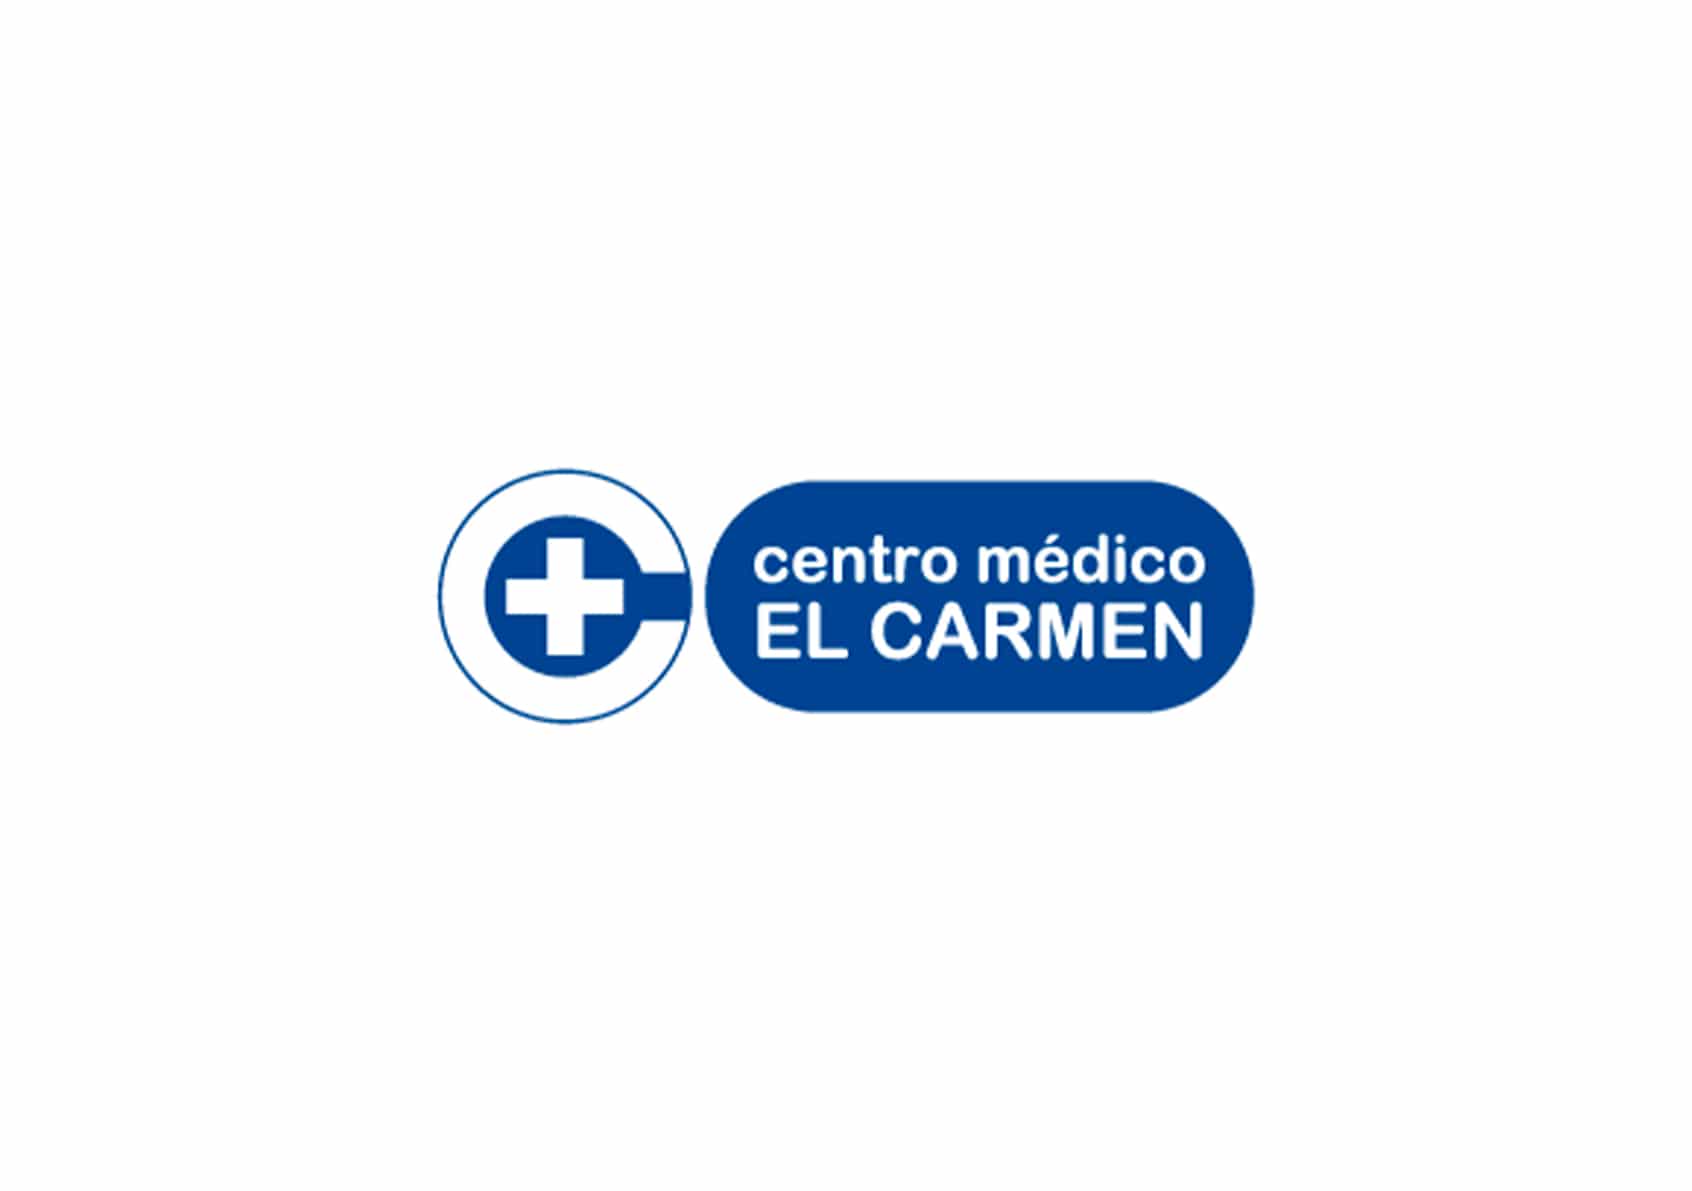 centro medico el carmen - inova3 - Marketing digital desde ourense